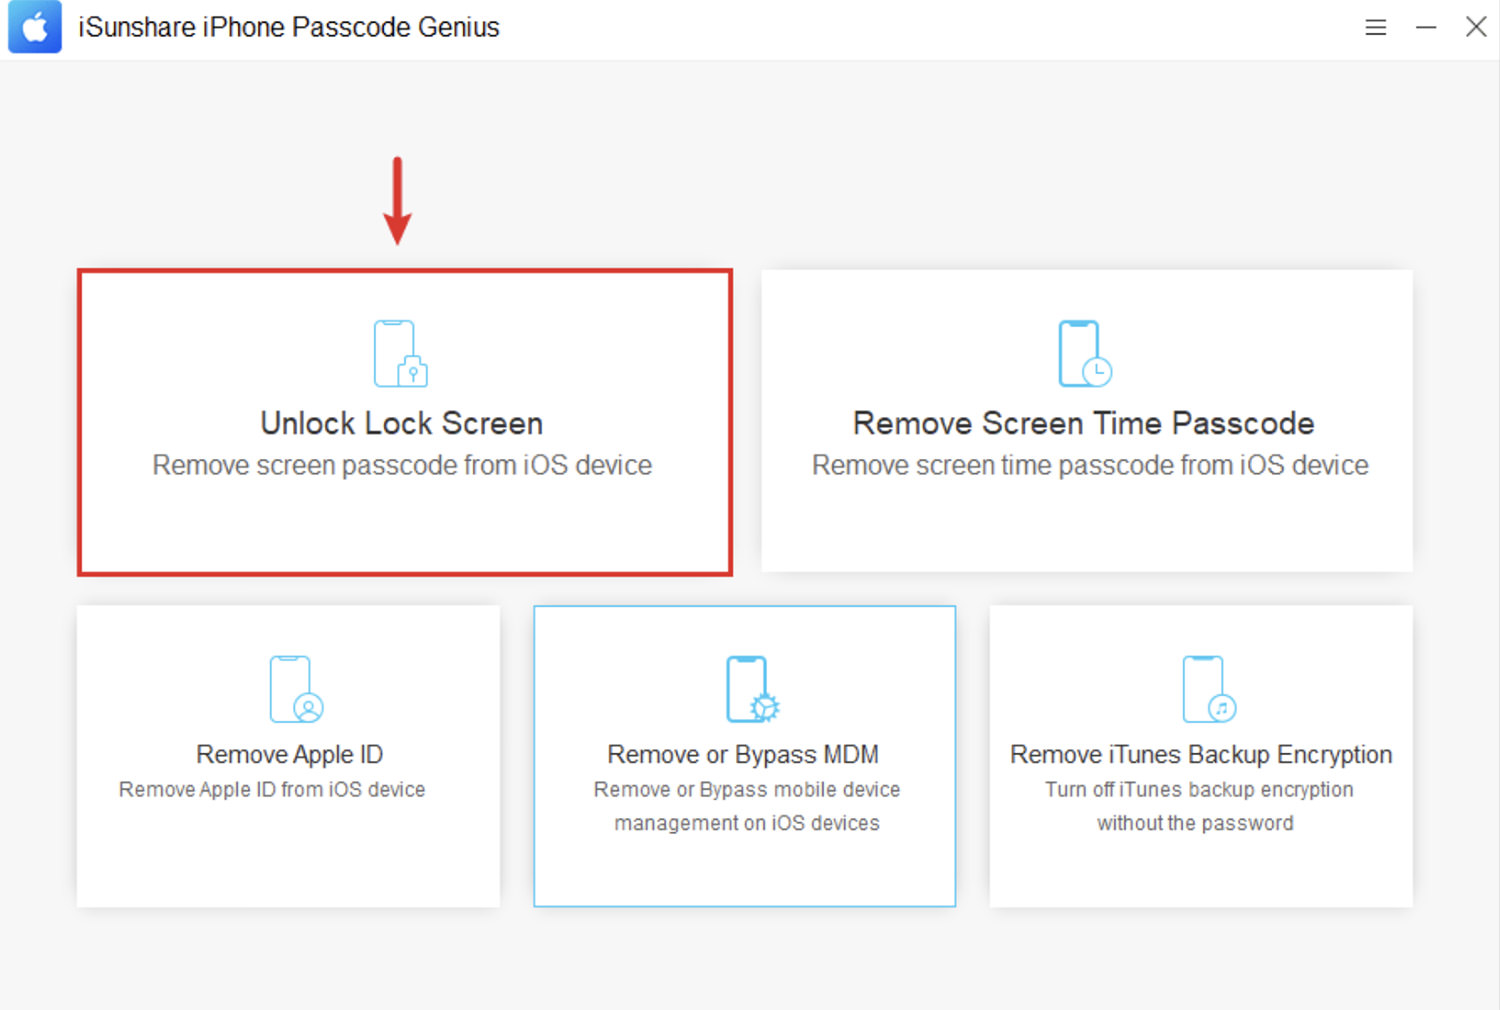 Unlock Lock Screen option in iSunshare iPhone Passcode Genius